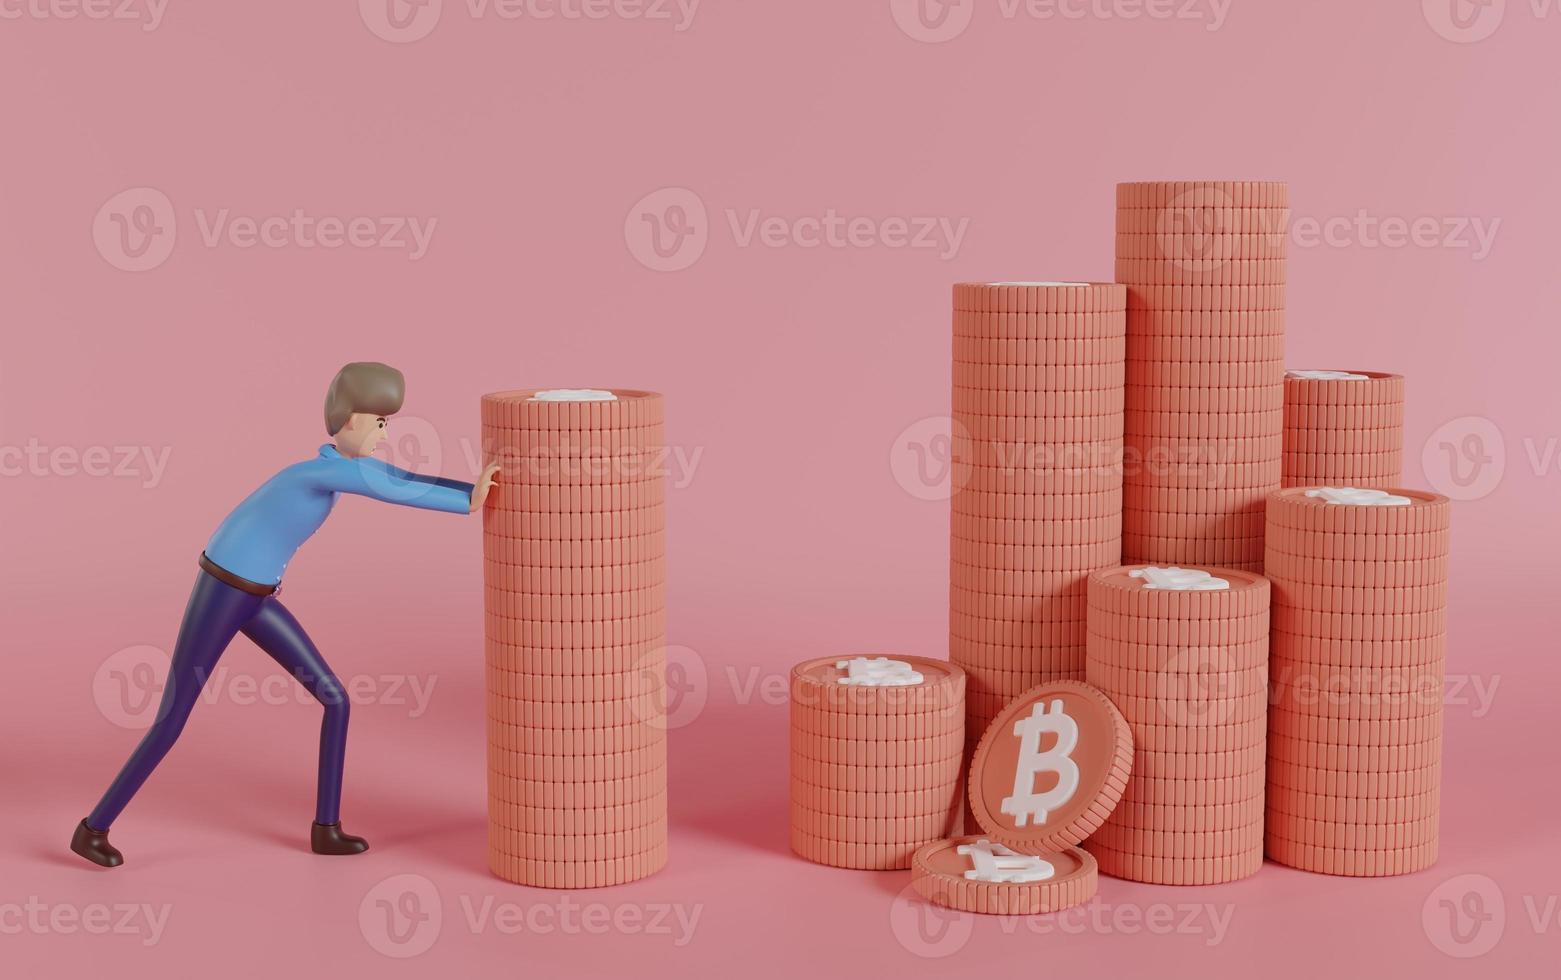 cartoon zakenman duwen een stapel munten naar een andere stapels, financieel concept, geldbesparing, 3d render illustratie, bitcoin groei concept. foto